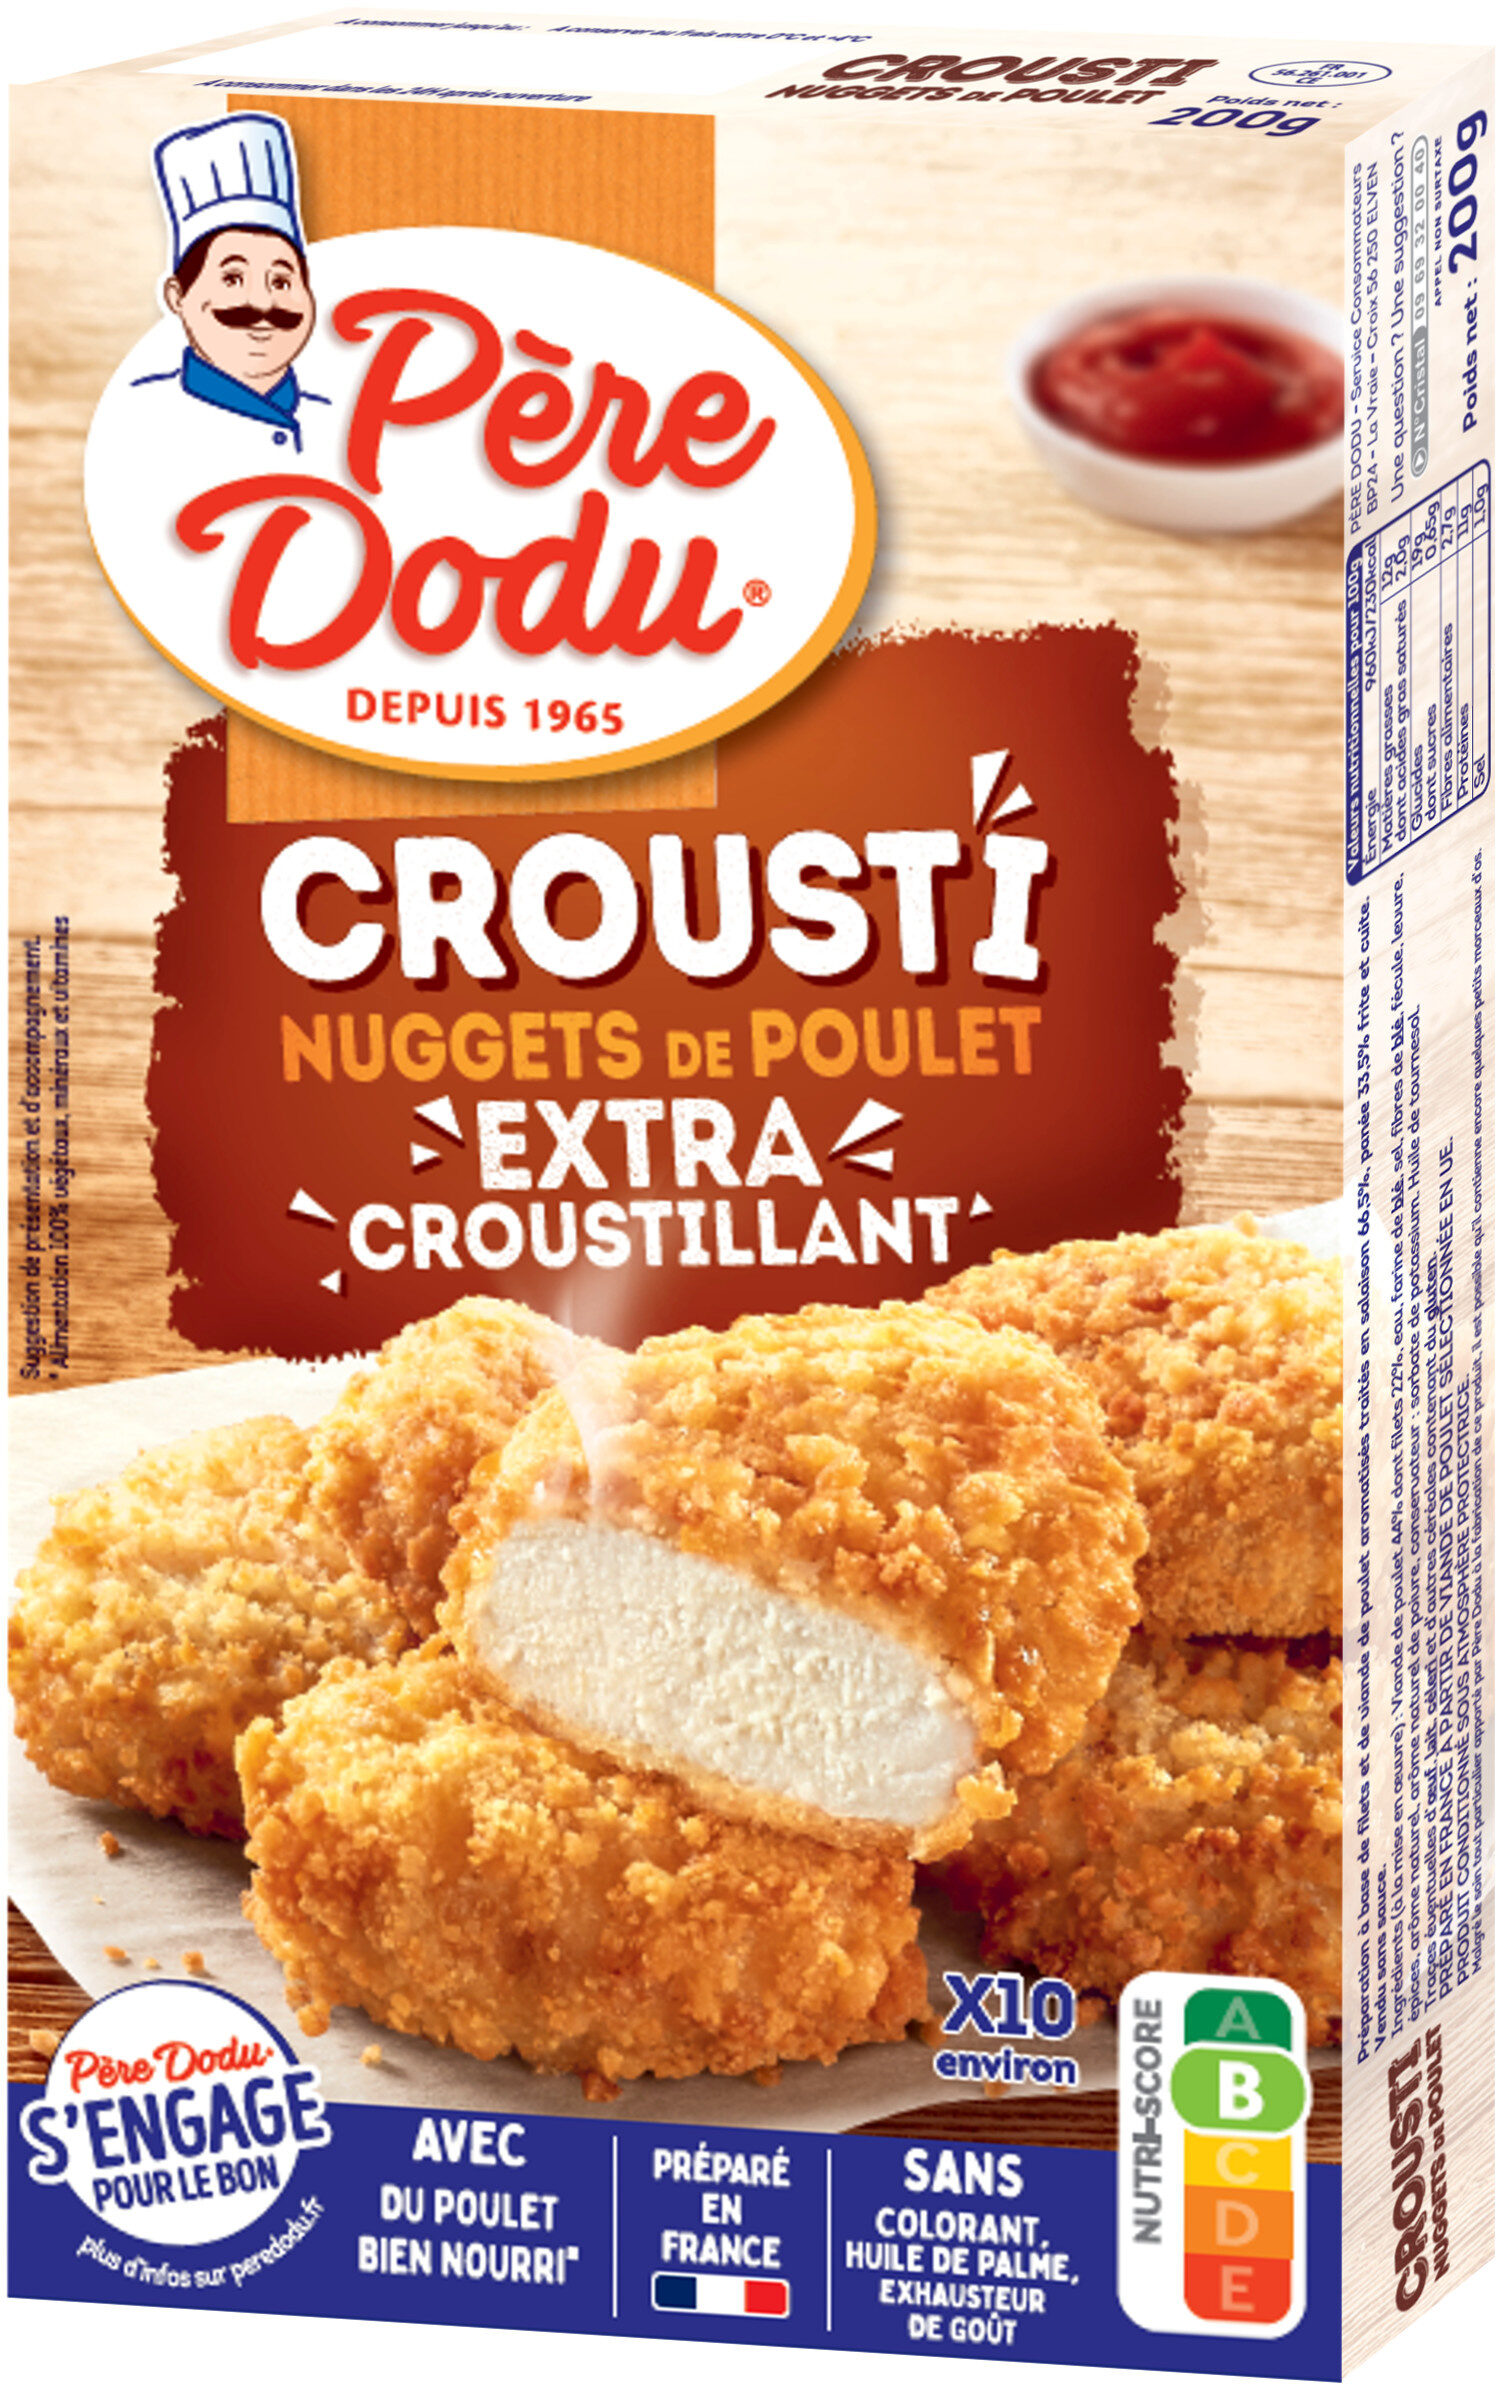 Crousti nuggets de poulet - Produkt - fr